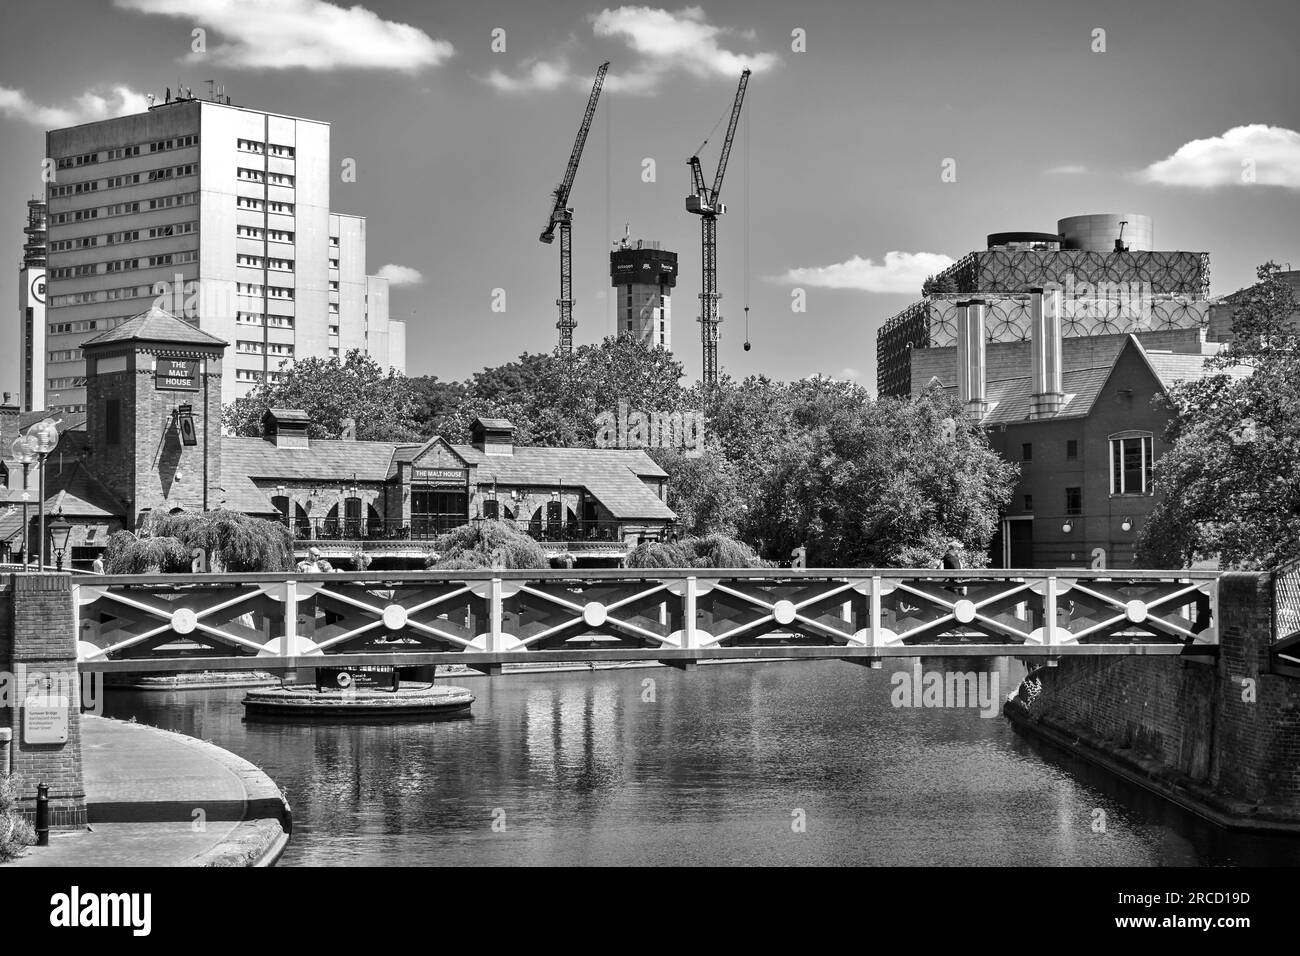 Ponte pedonale sull'acqua che attraversa il canale a Brindley Place, Birmingham Canal, Birmingham, Inghilterra, Regno Unito. Fotografia in bianco e nero Foto Stock